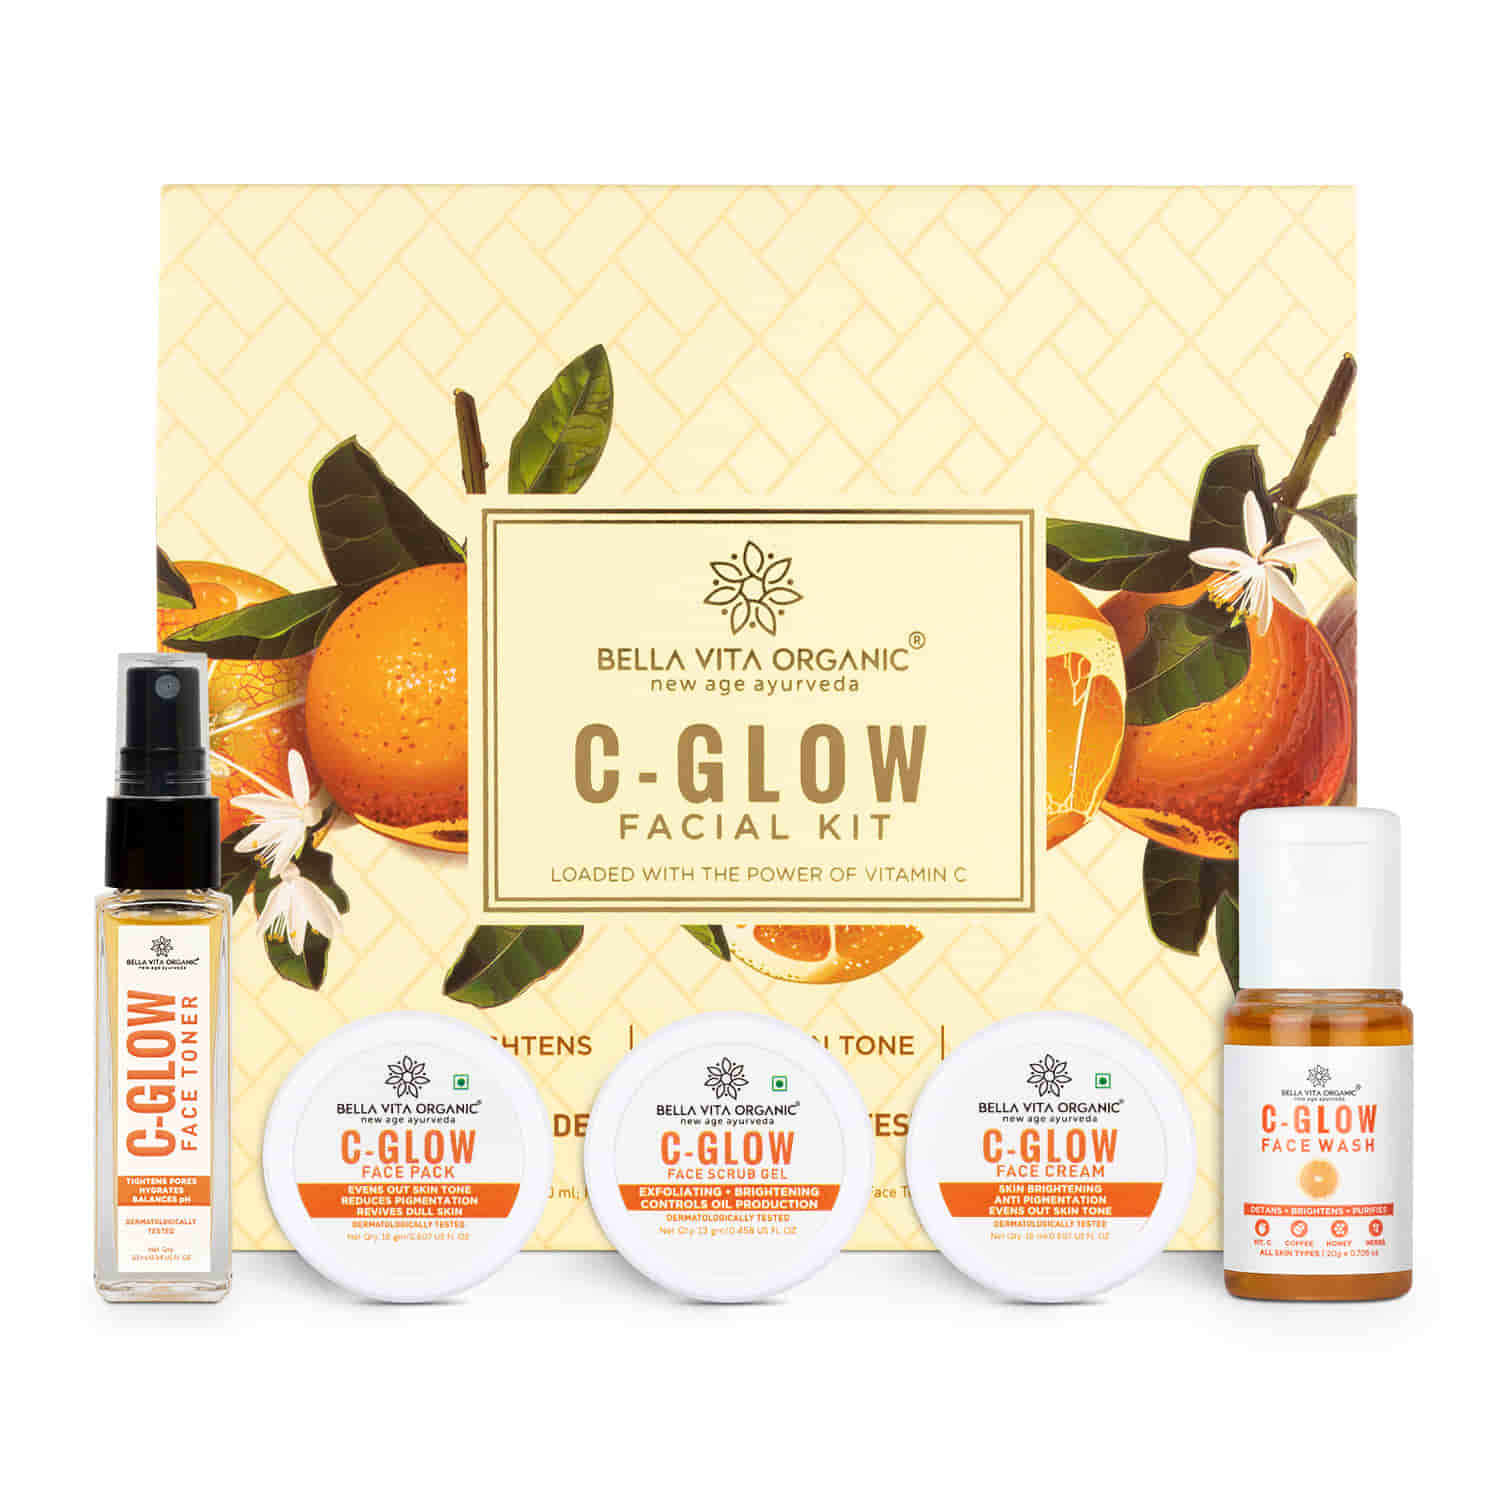 C-Glow Facial Kit